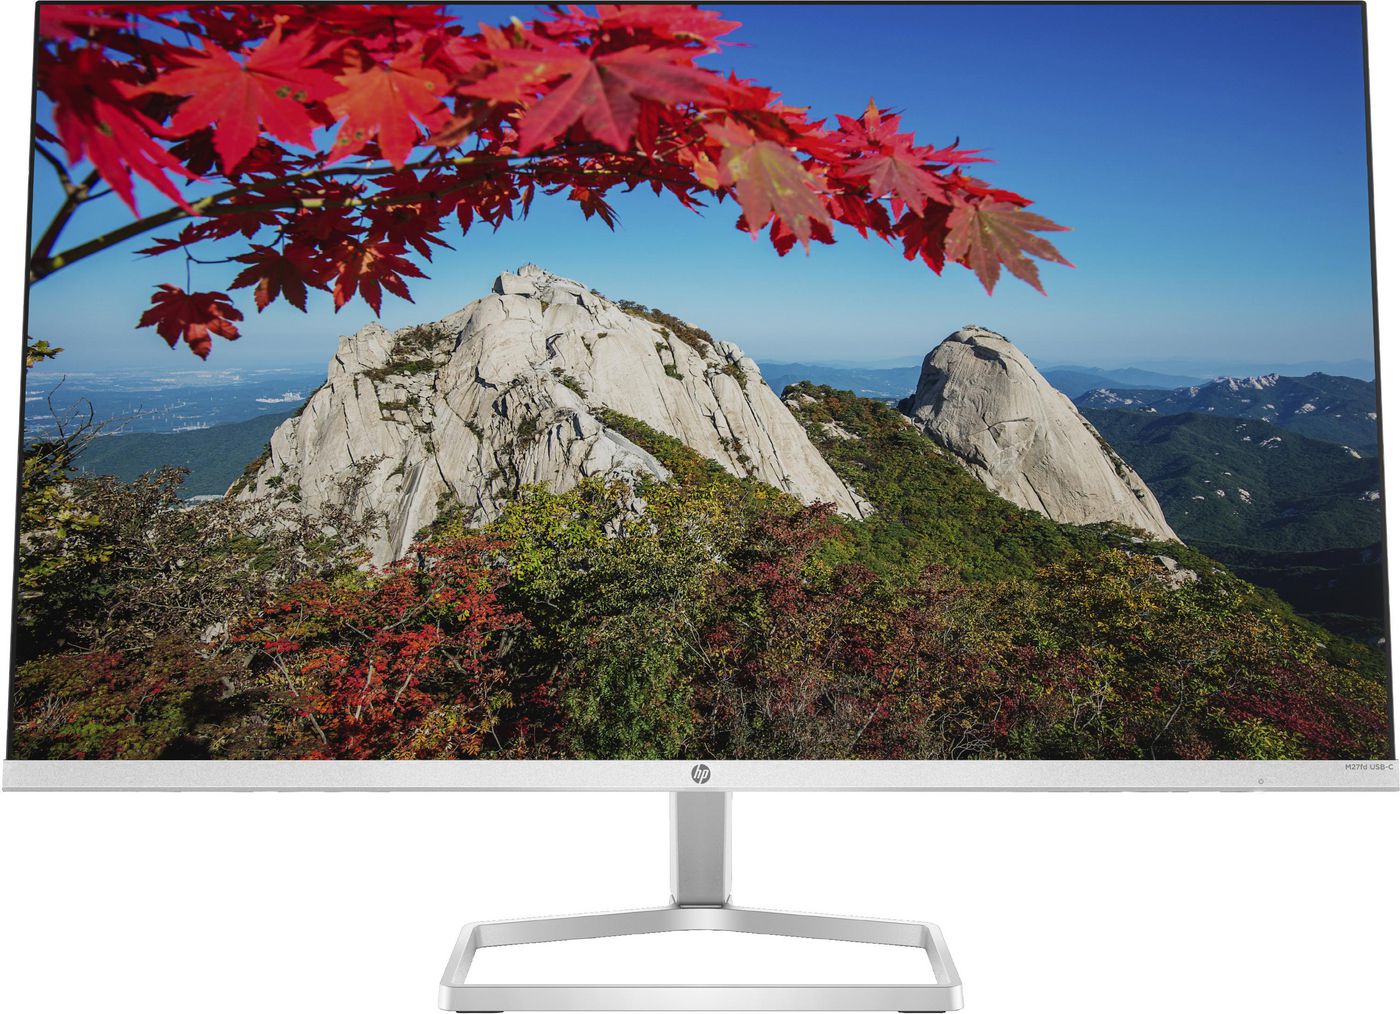 Desktop Monitor - M27fd - 27in - 1920x1080 (FHD) - IPS